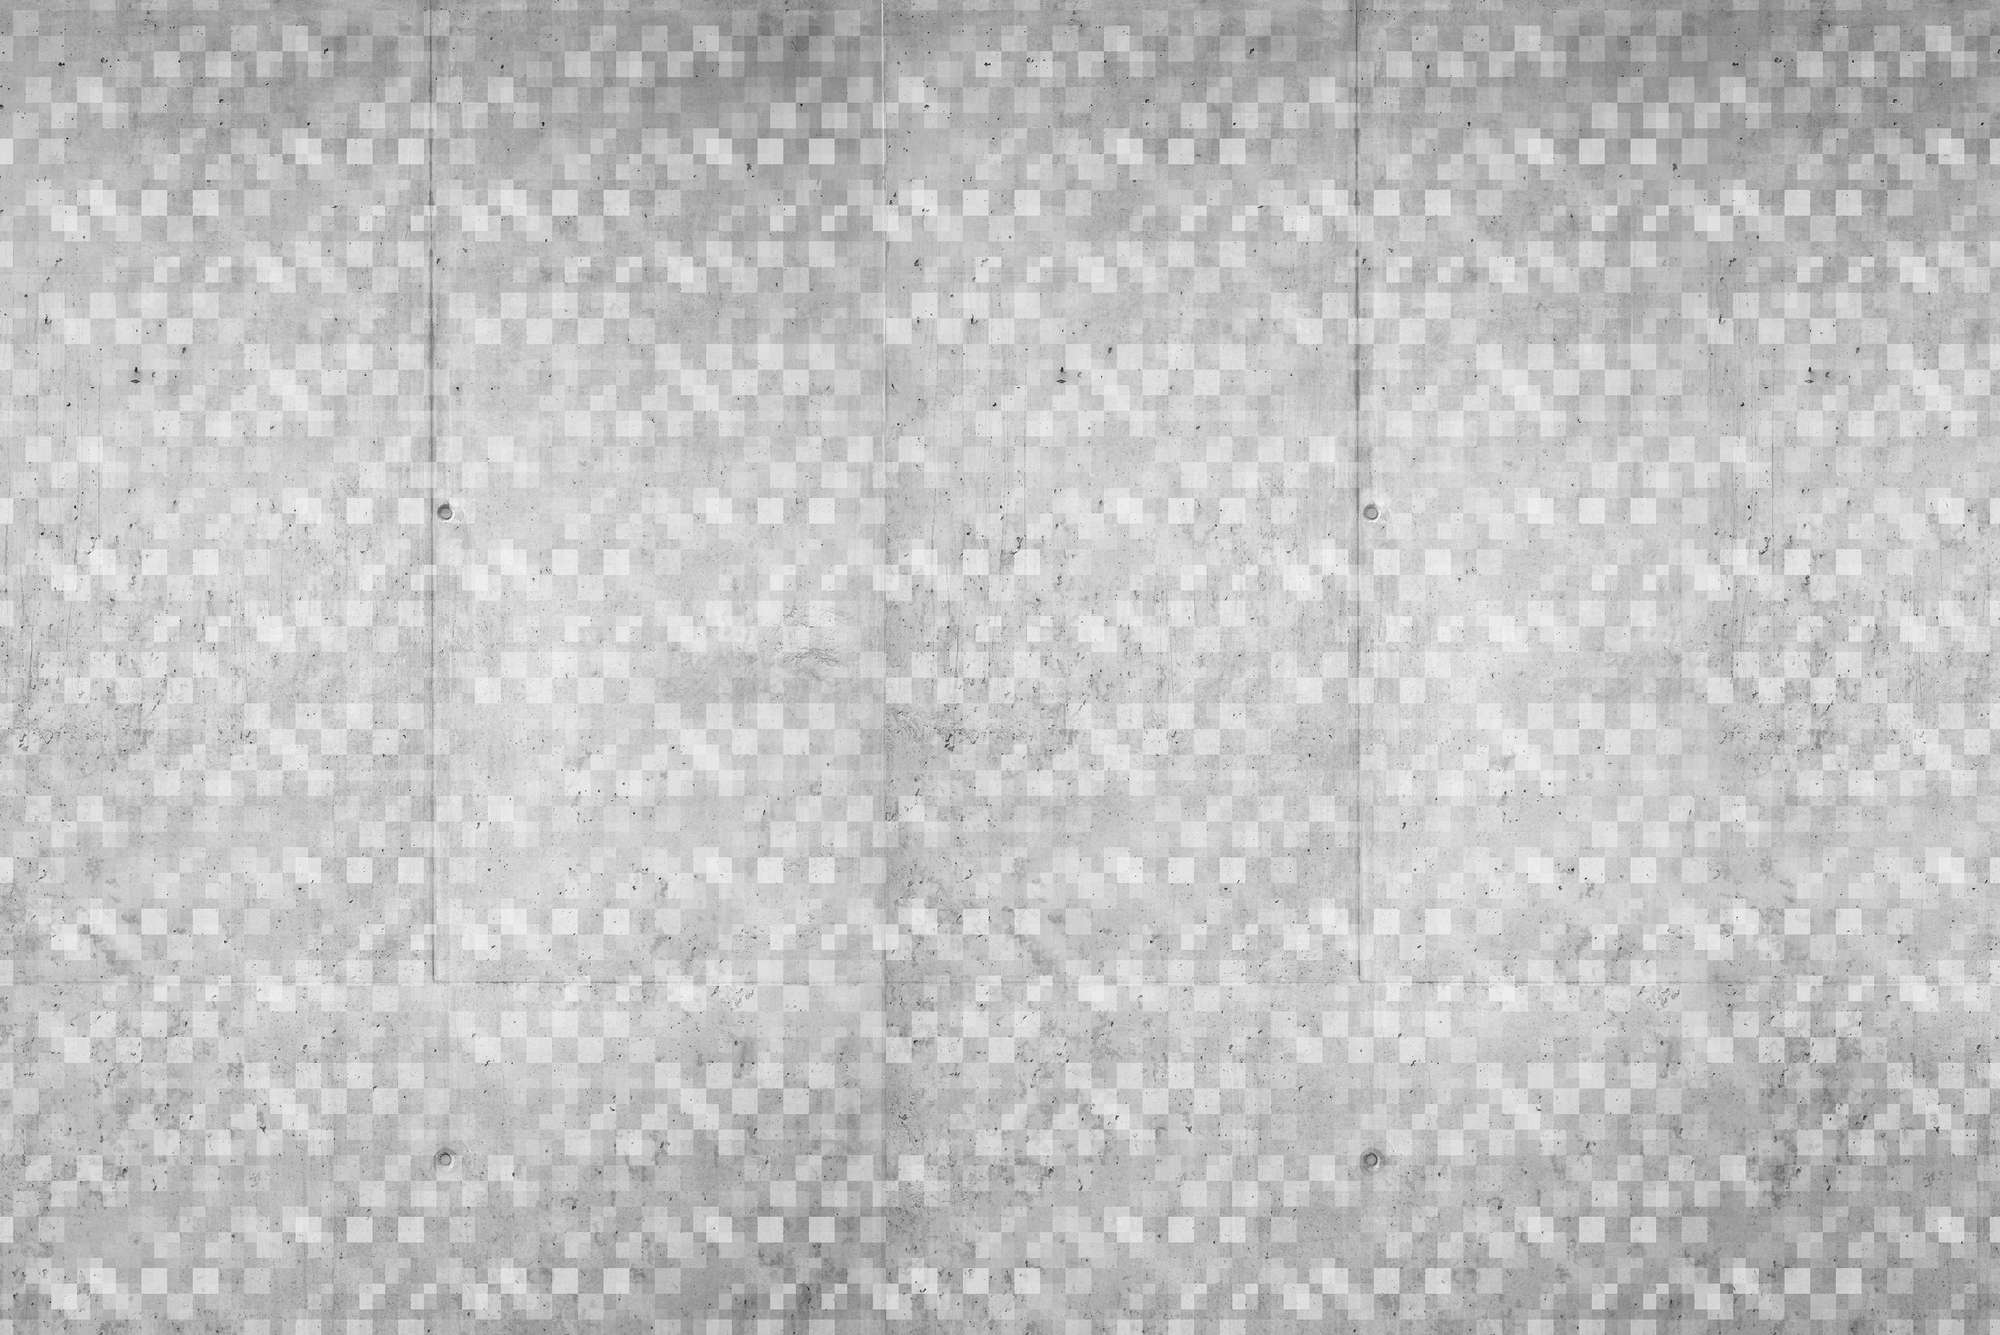             Grafisch behang met overlappend kubusmotief grijs op hoogwaardig glad vlies
        